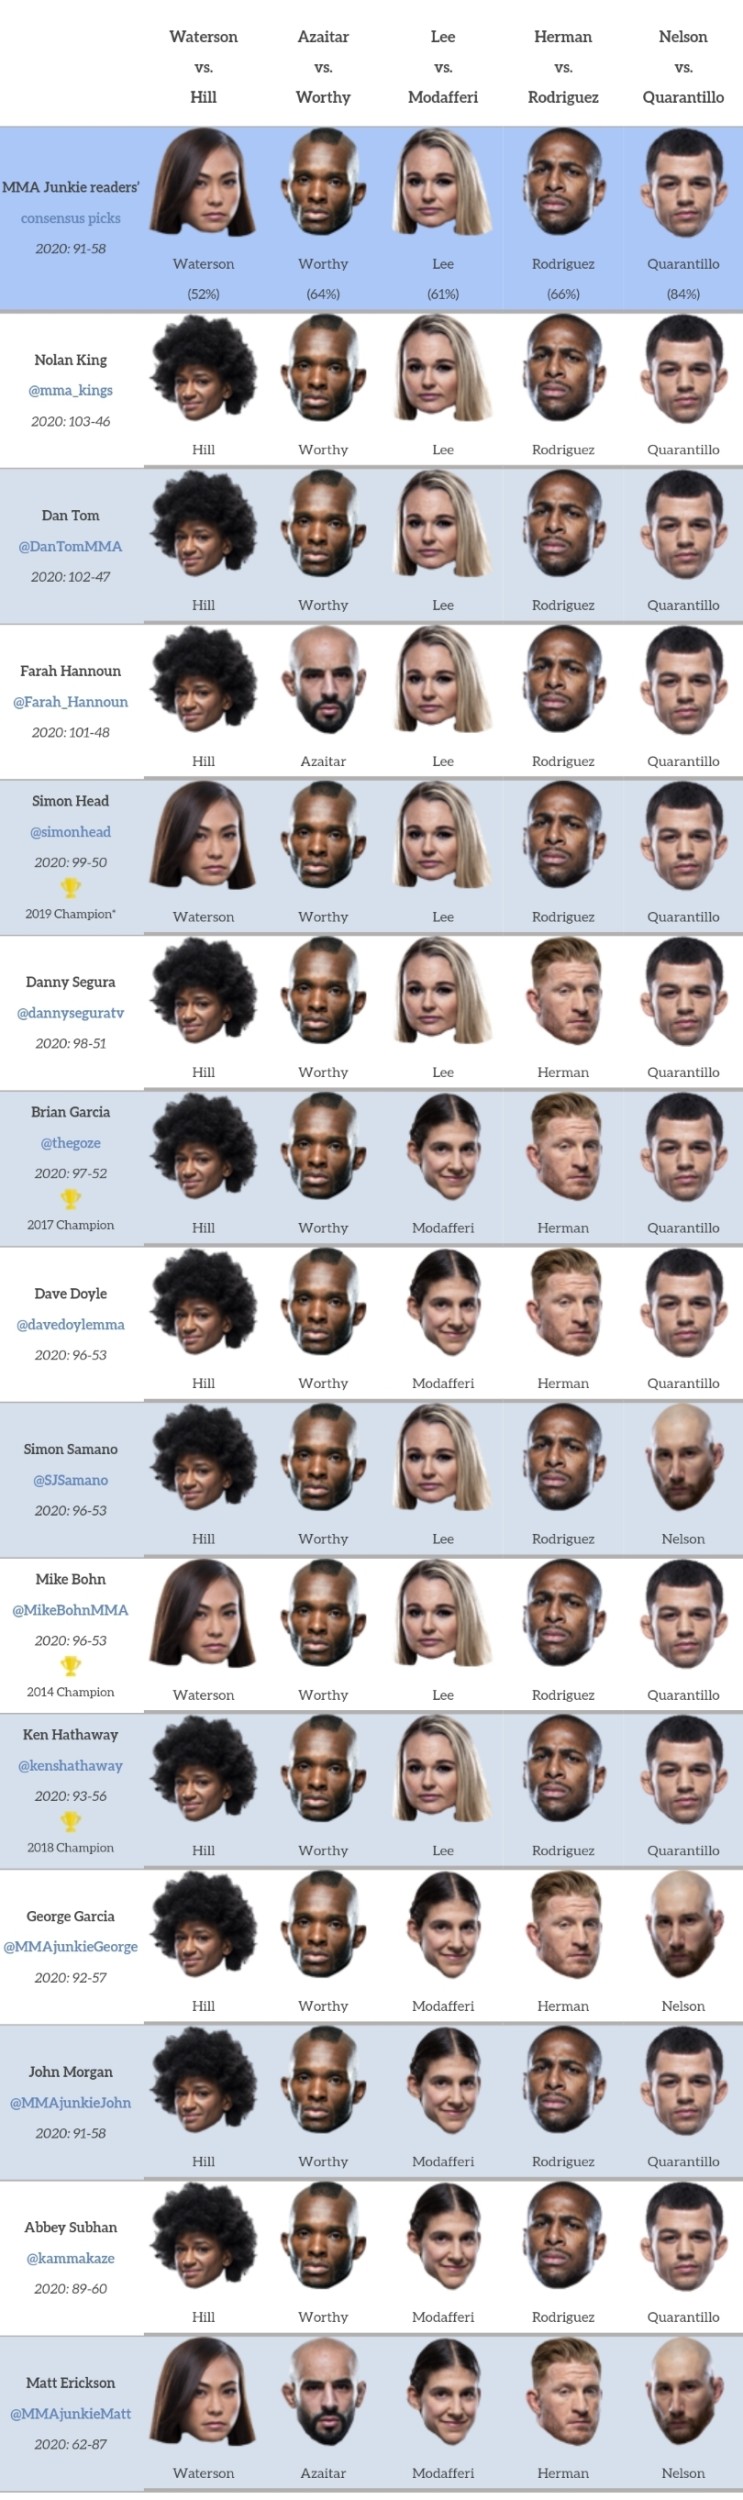 UFC 베가스 10: 워터슨 vs 힐 프리뷰(미디어 예상 및 배당률)